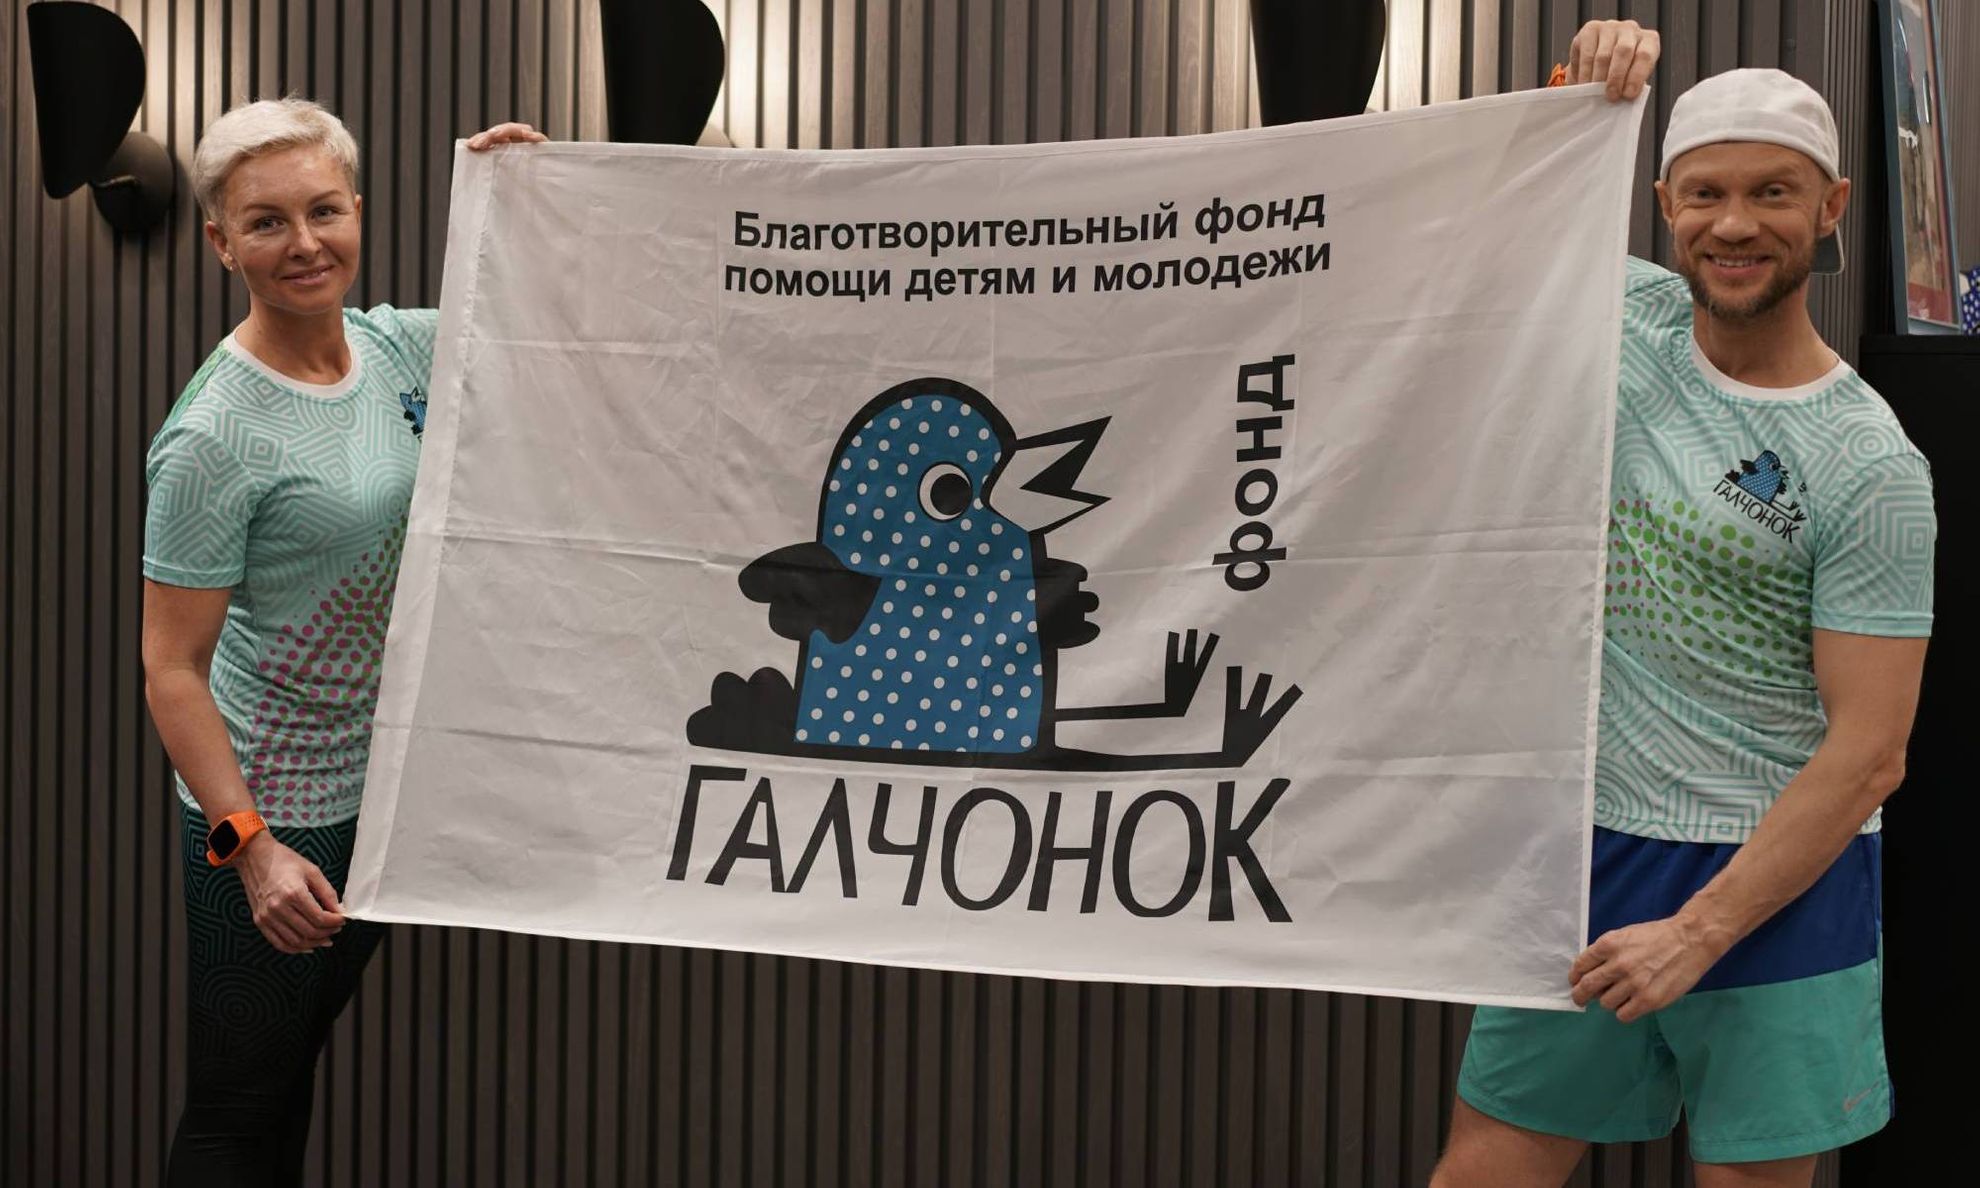 Татьяна и Дмитрий Хрусталев держат флаг Фонда "ГАЛЧОНОК"